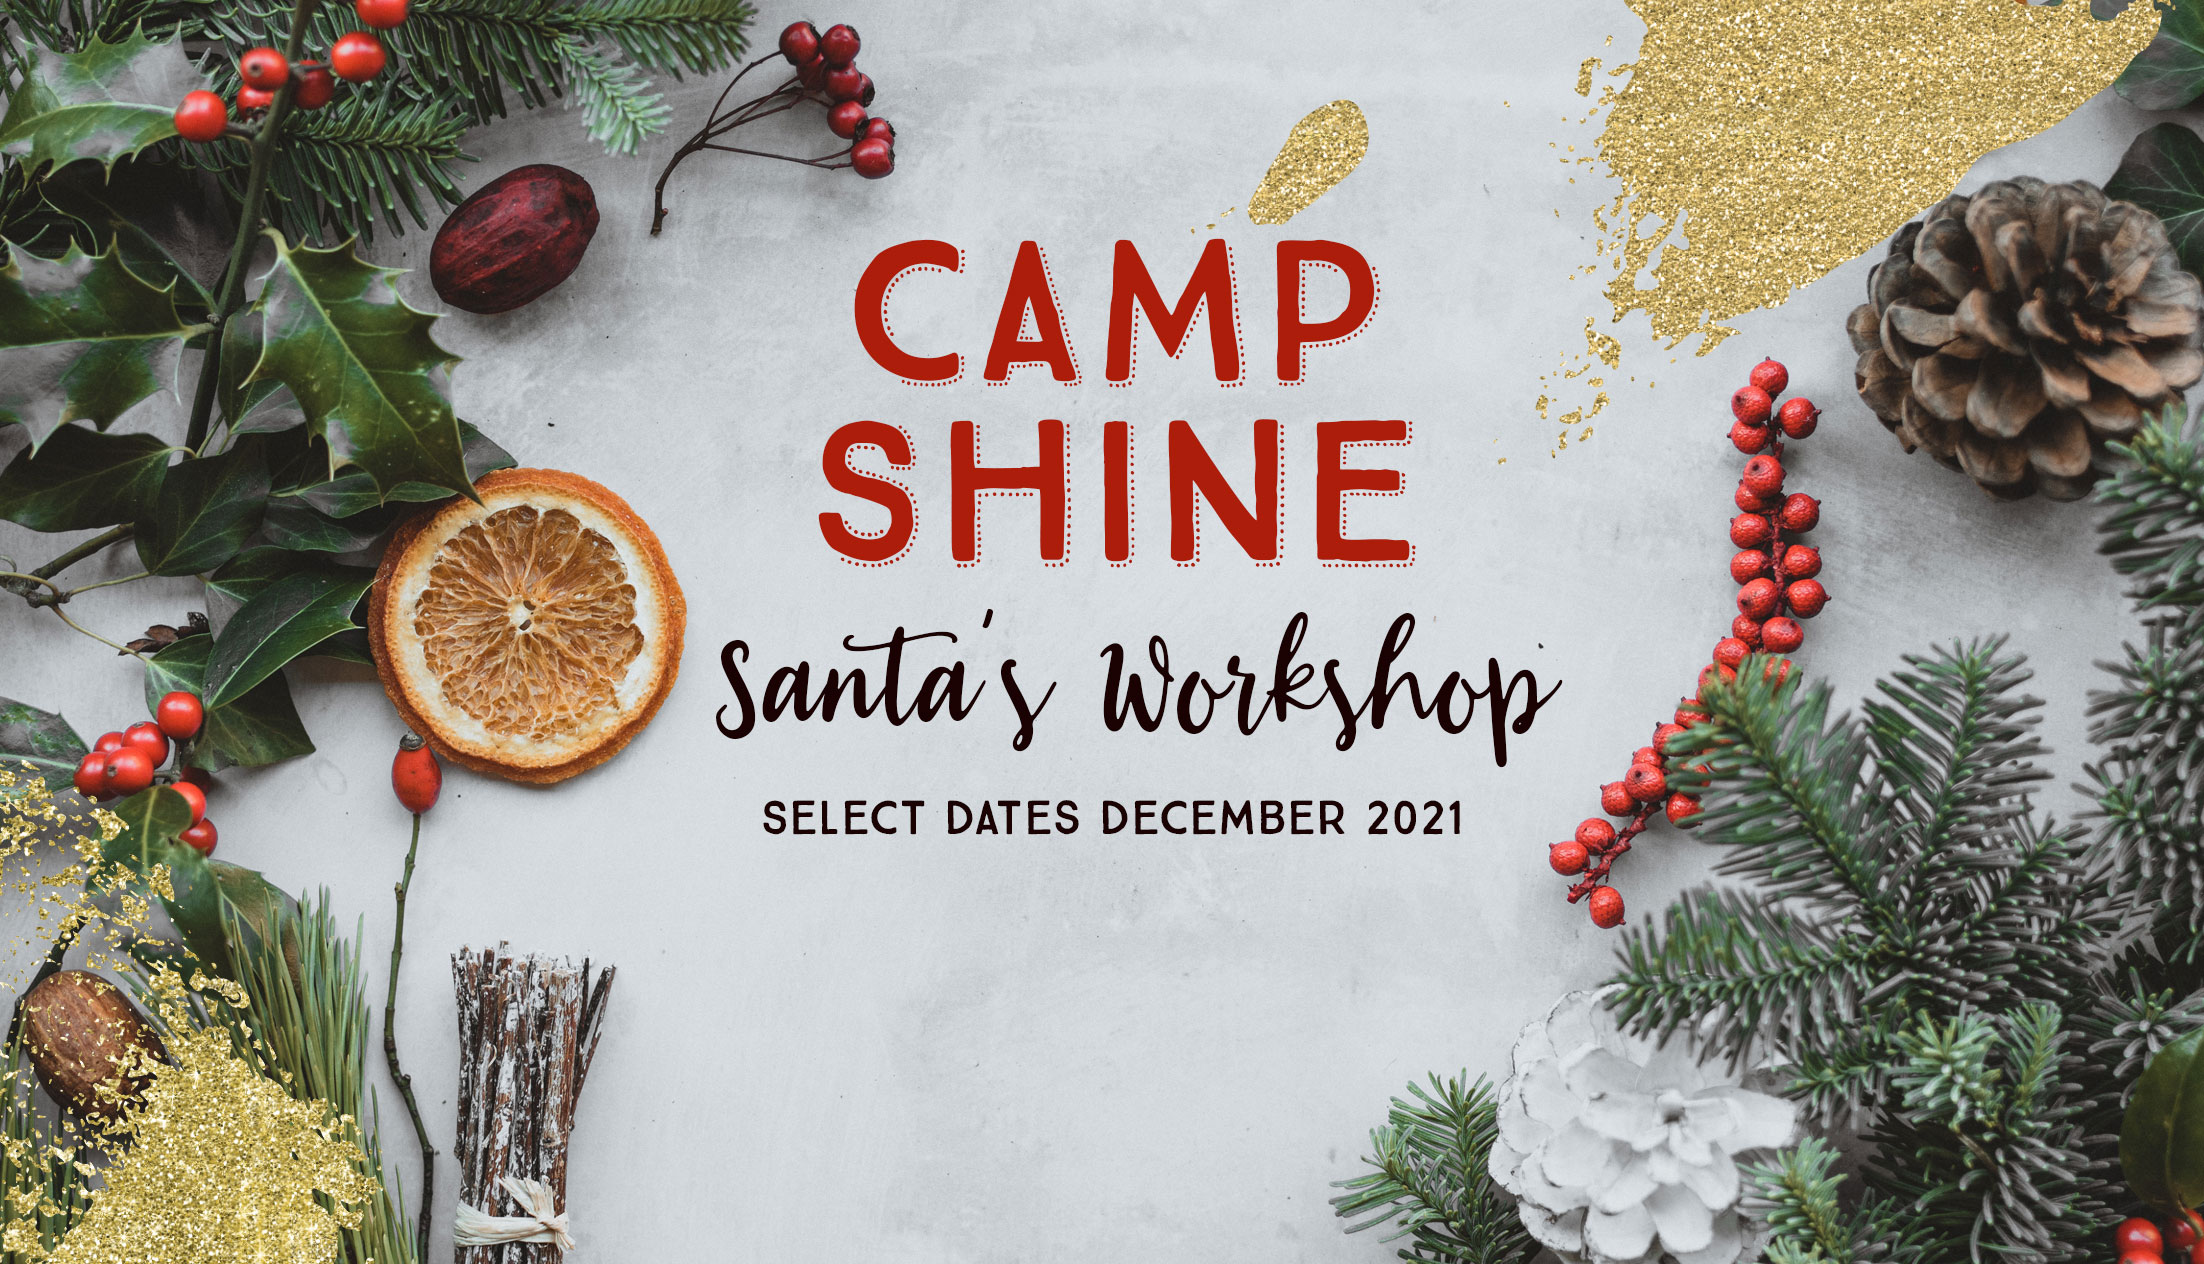 CAMP SHINE Santa's Workshop 2021